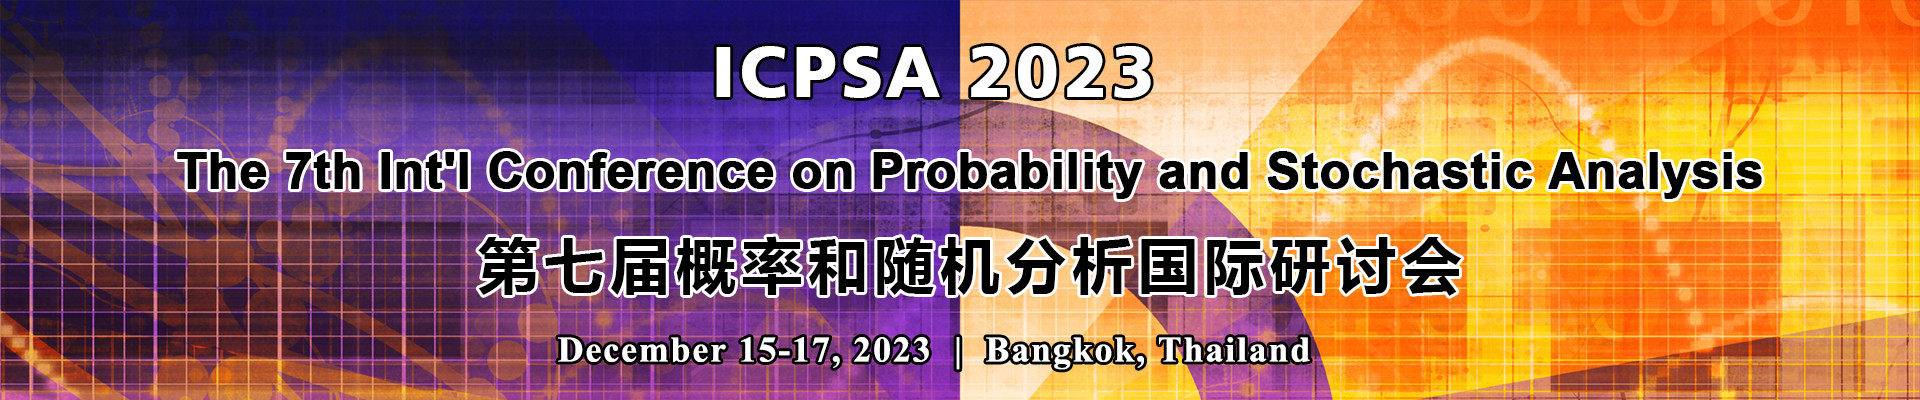 第七届概率和随机分析国际研讨会(ICPSA 2023)